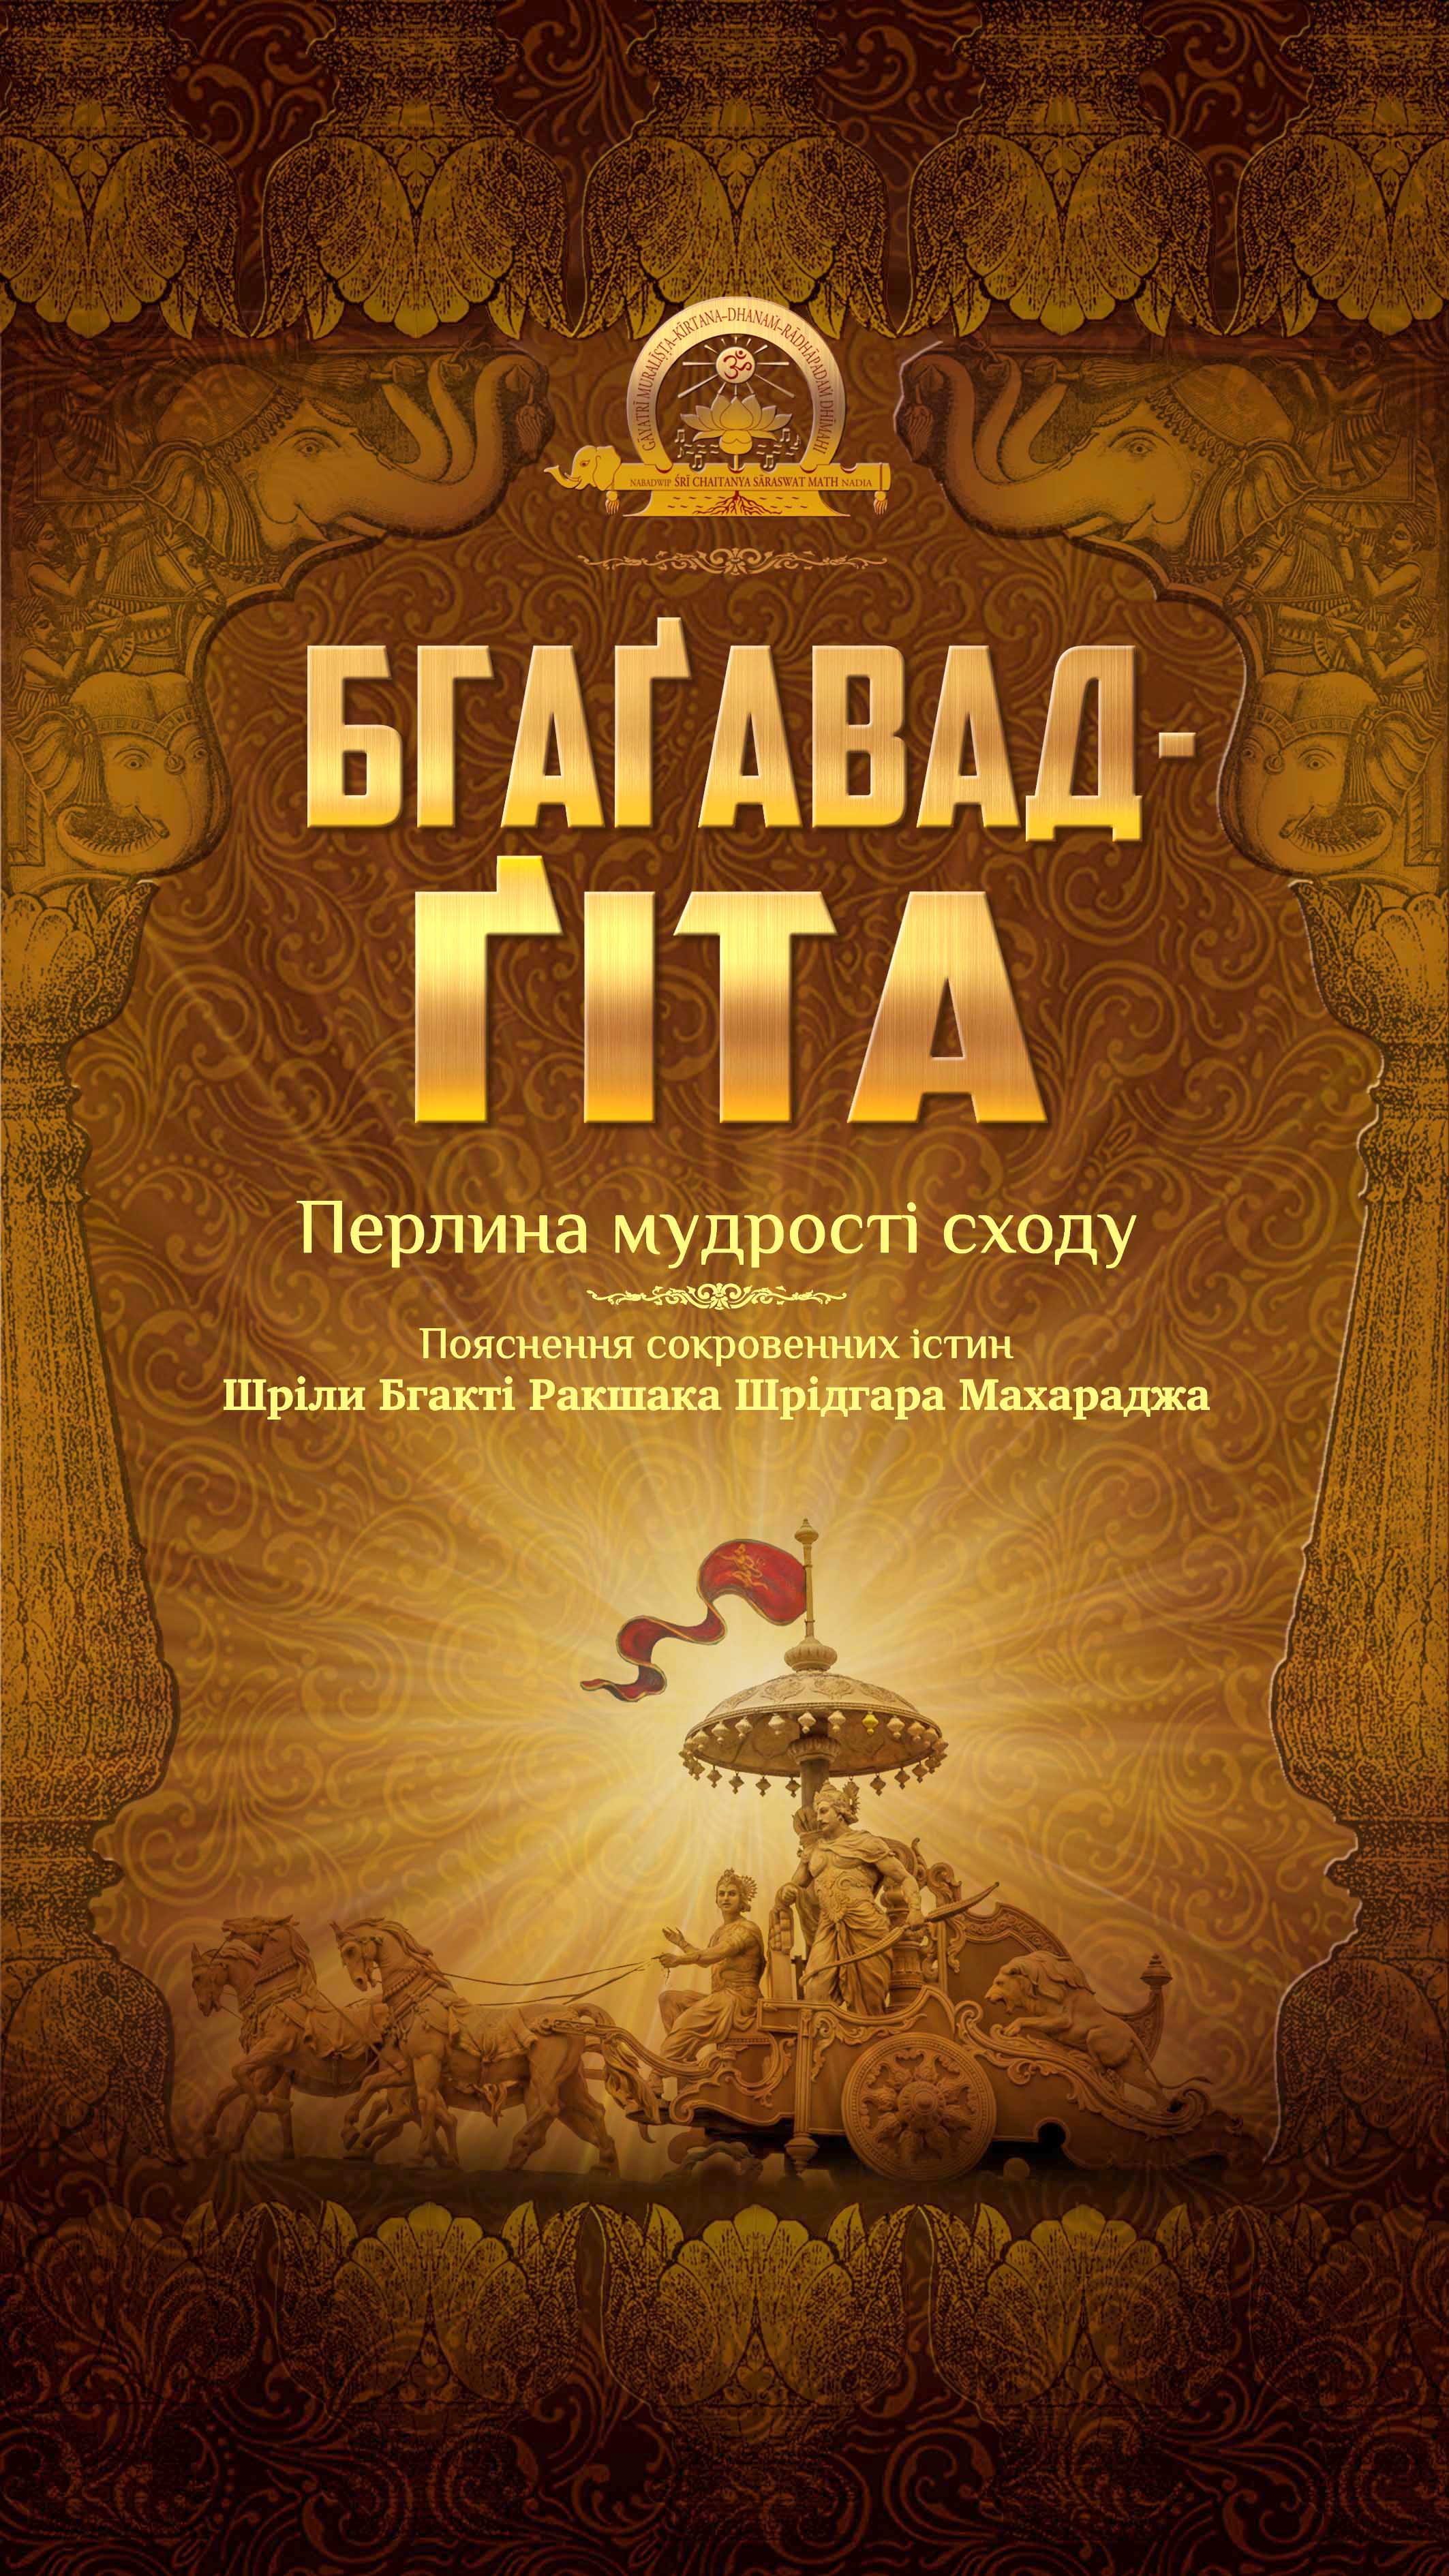 «Бгаґавад-ґіта в українському перекладі»